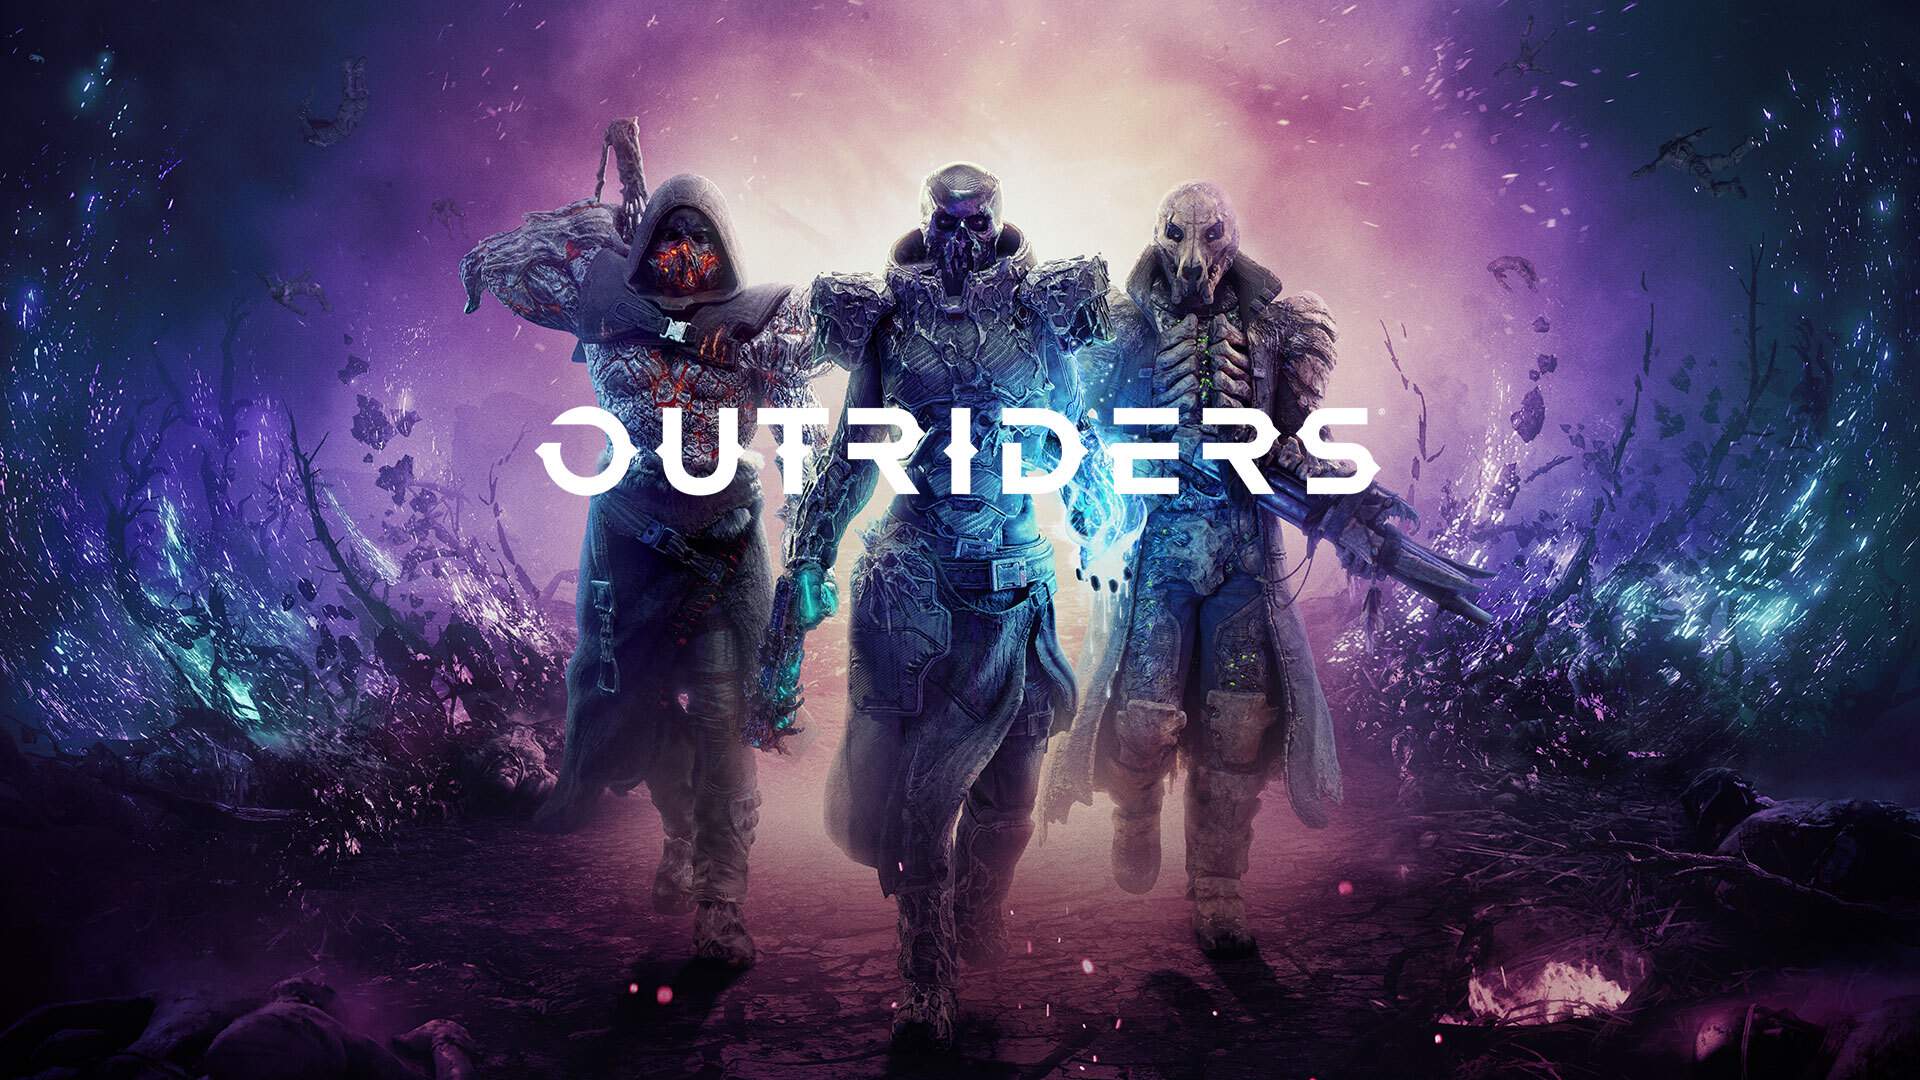 OUTRIDERS Original Game Cover Art